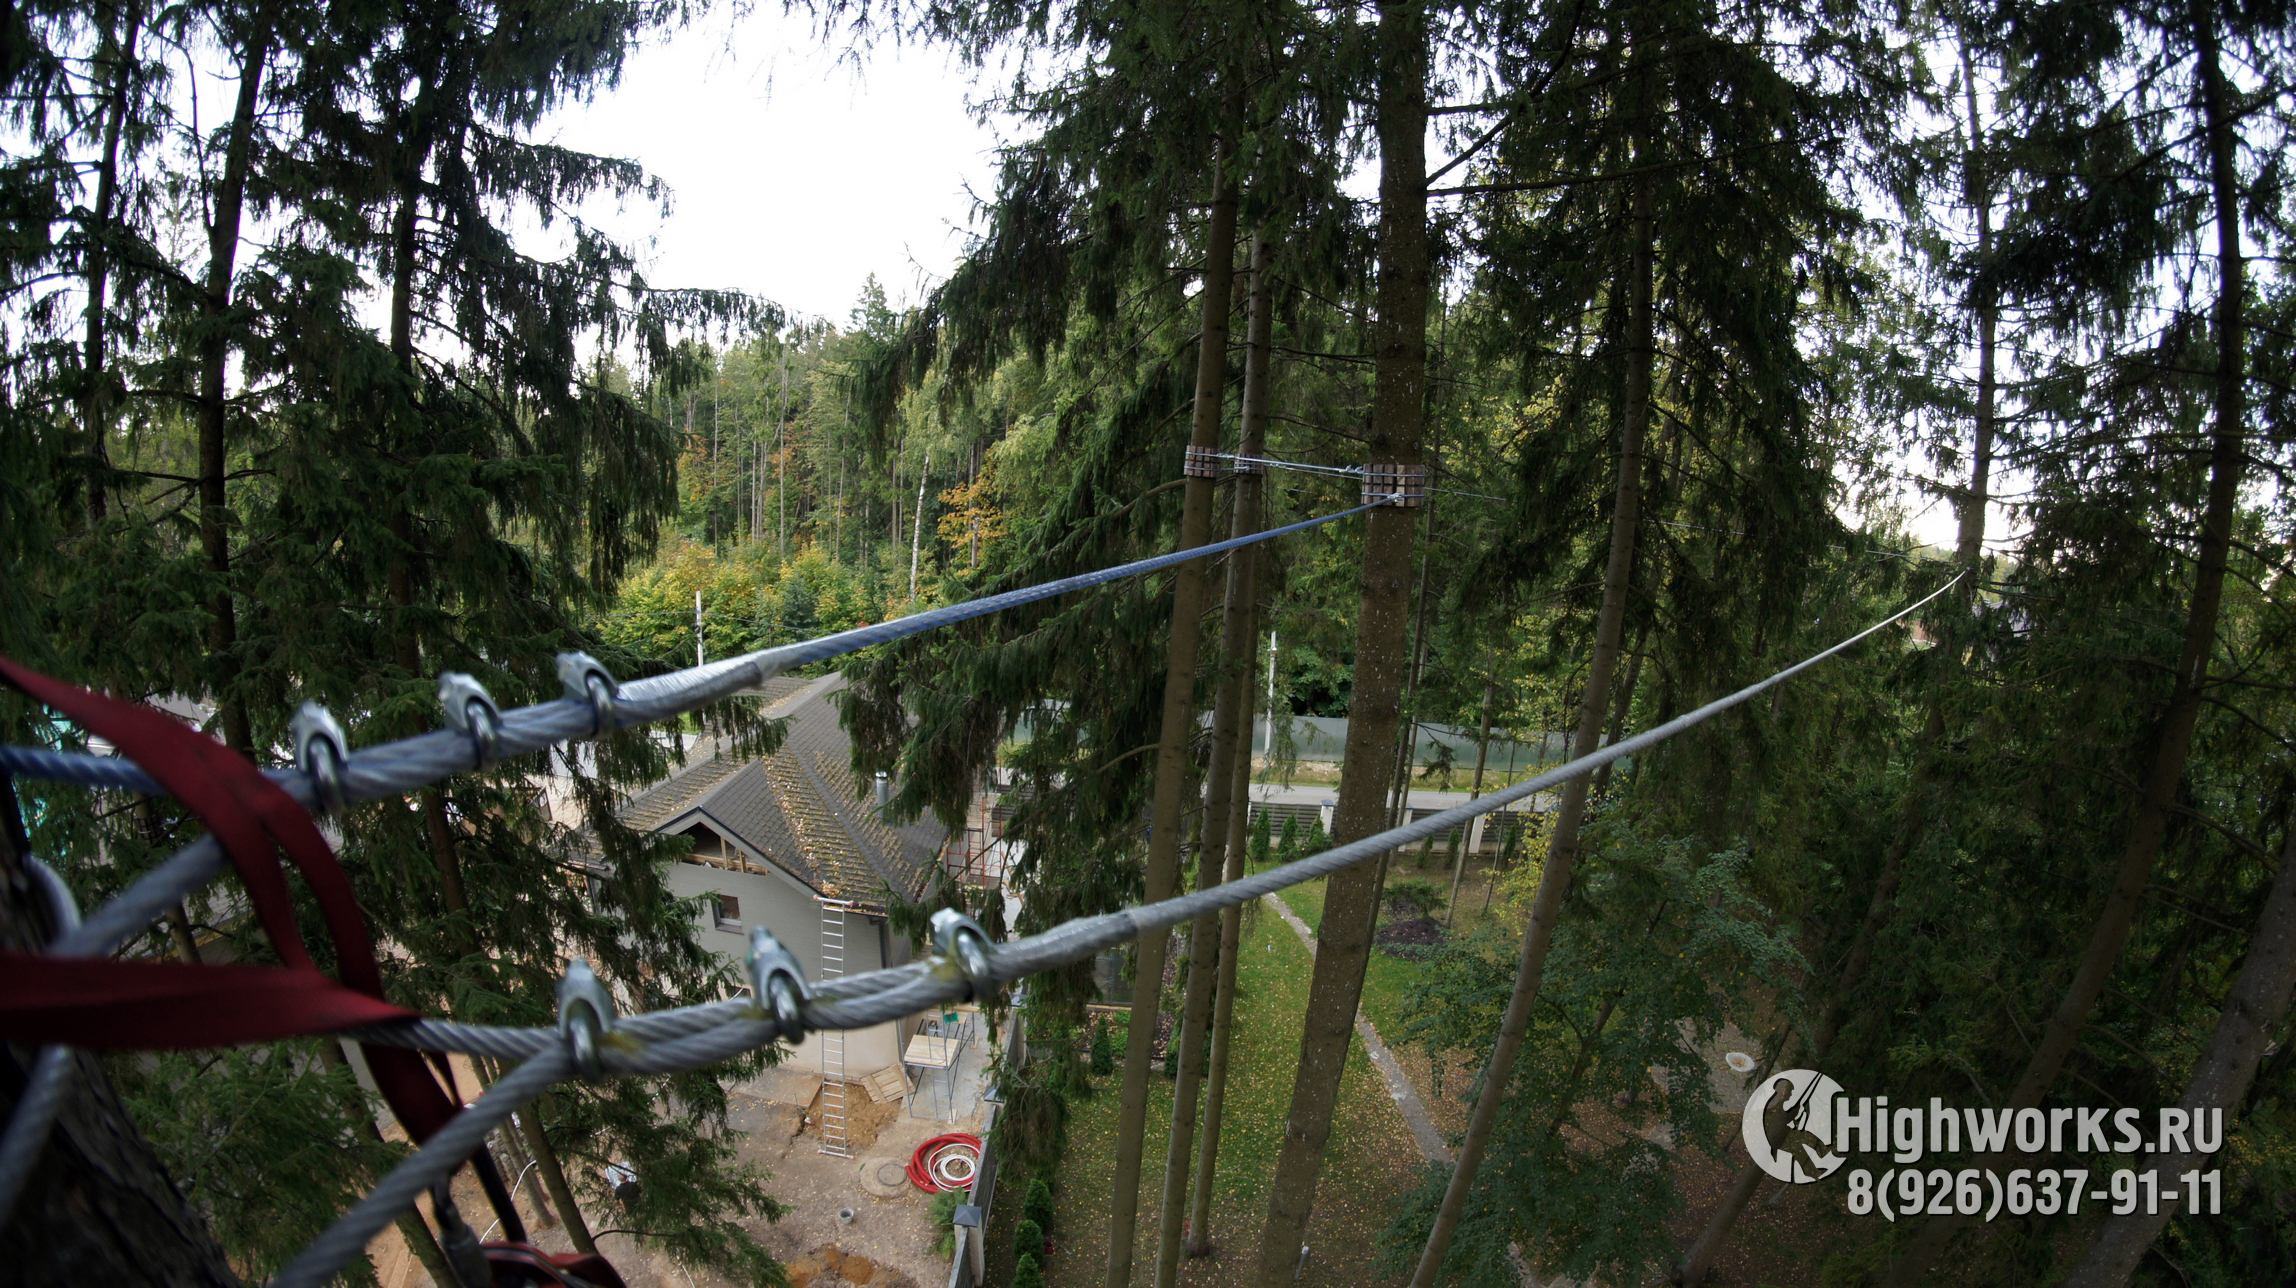 Укрепление деревьев промышленными альпинистами